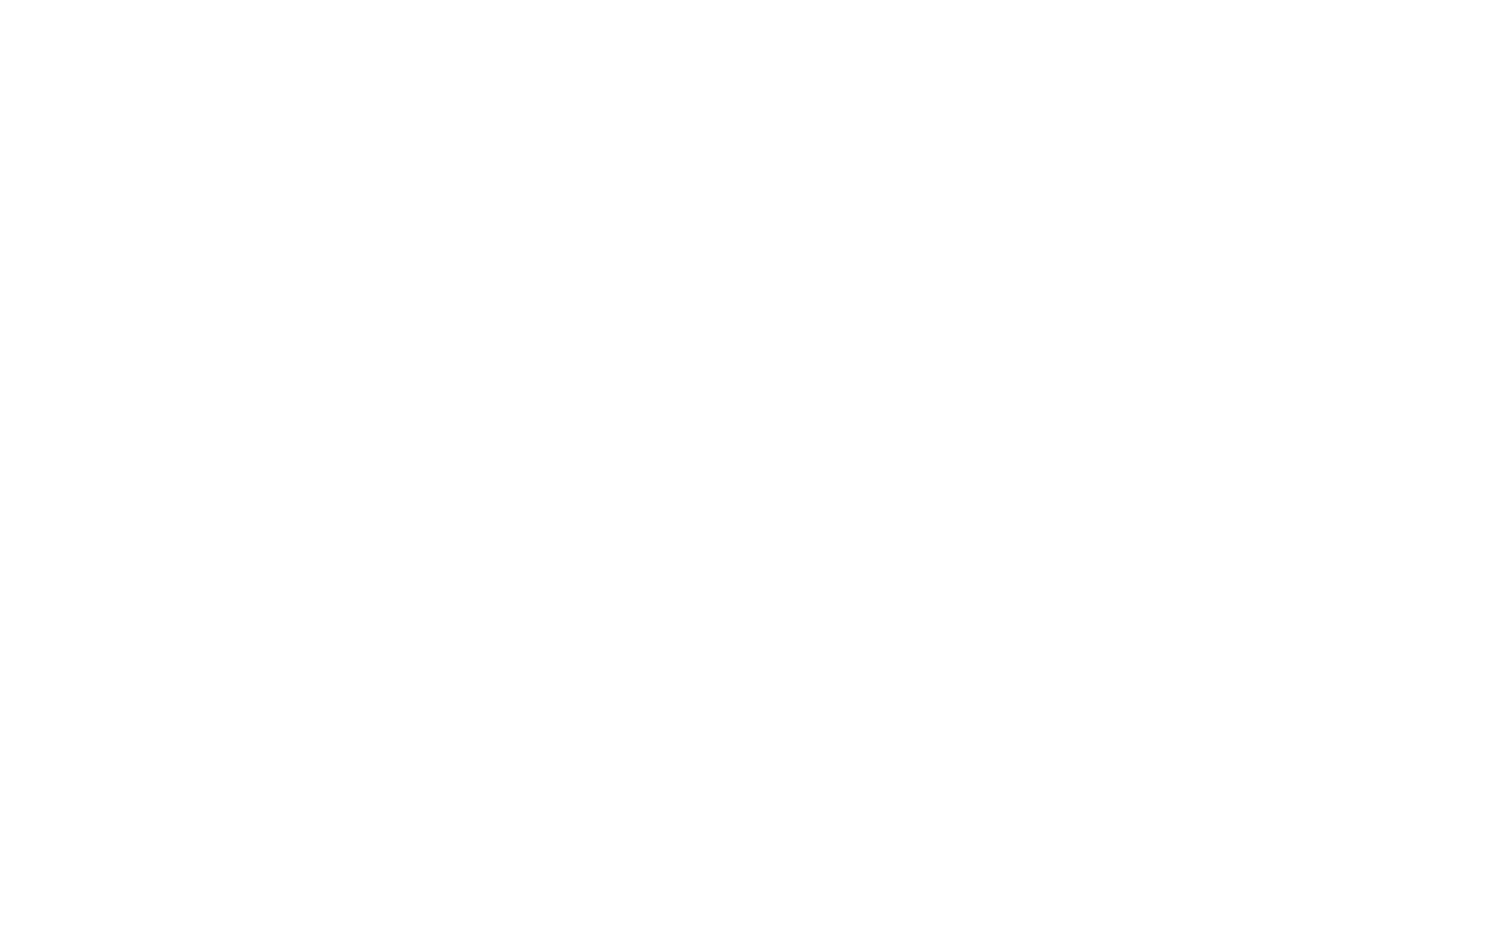 Kimbroplays